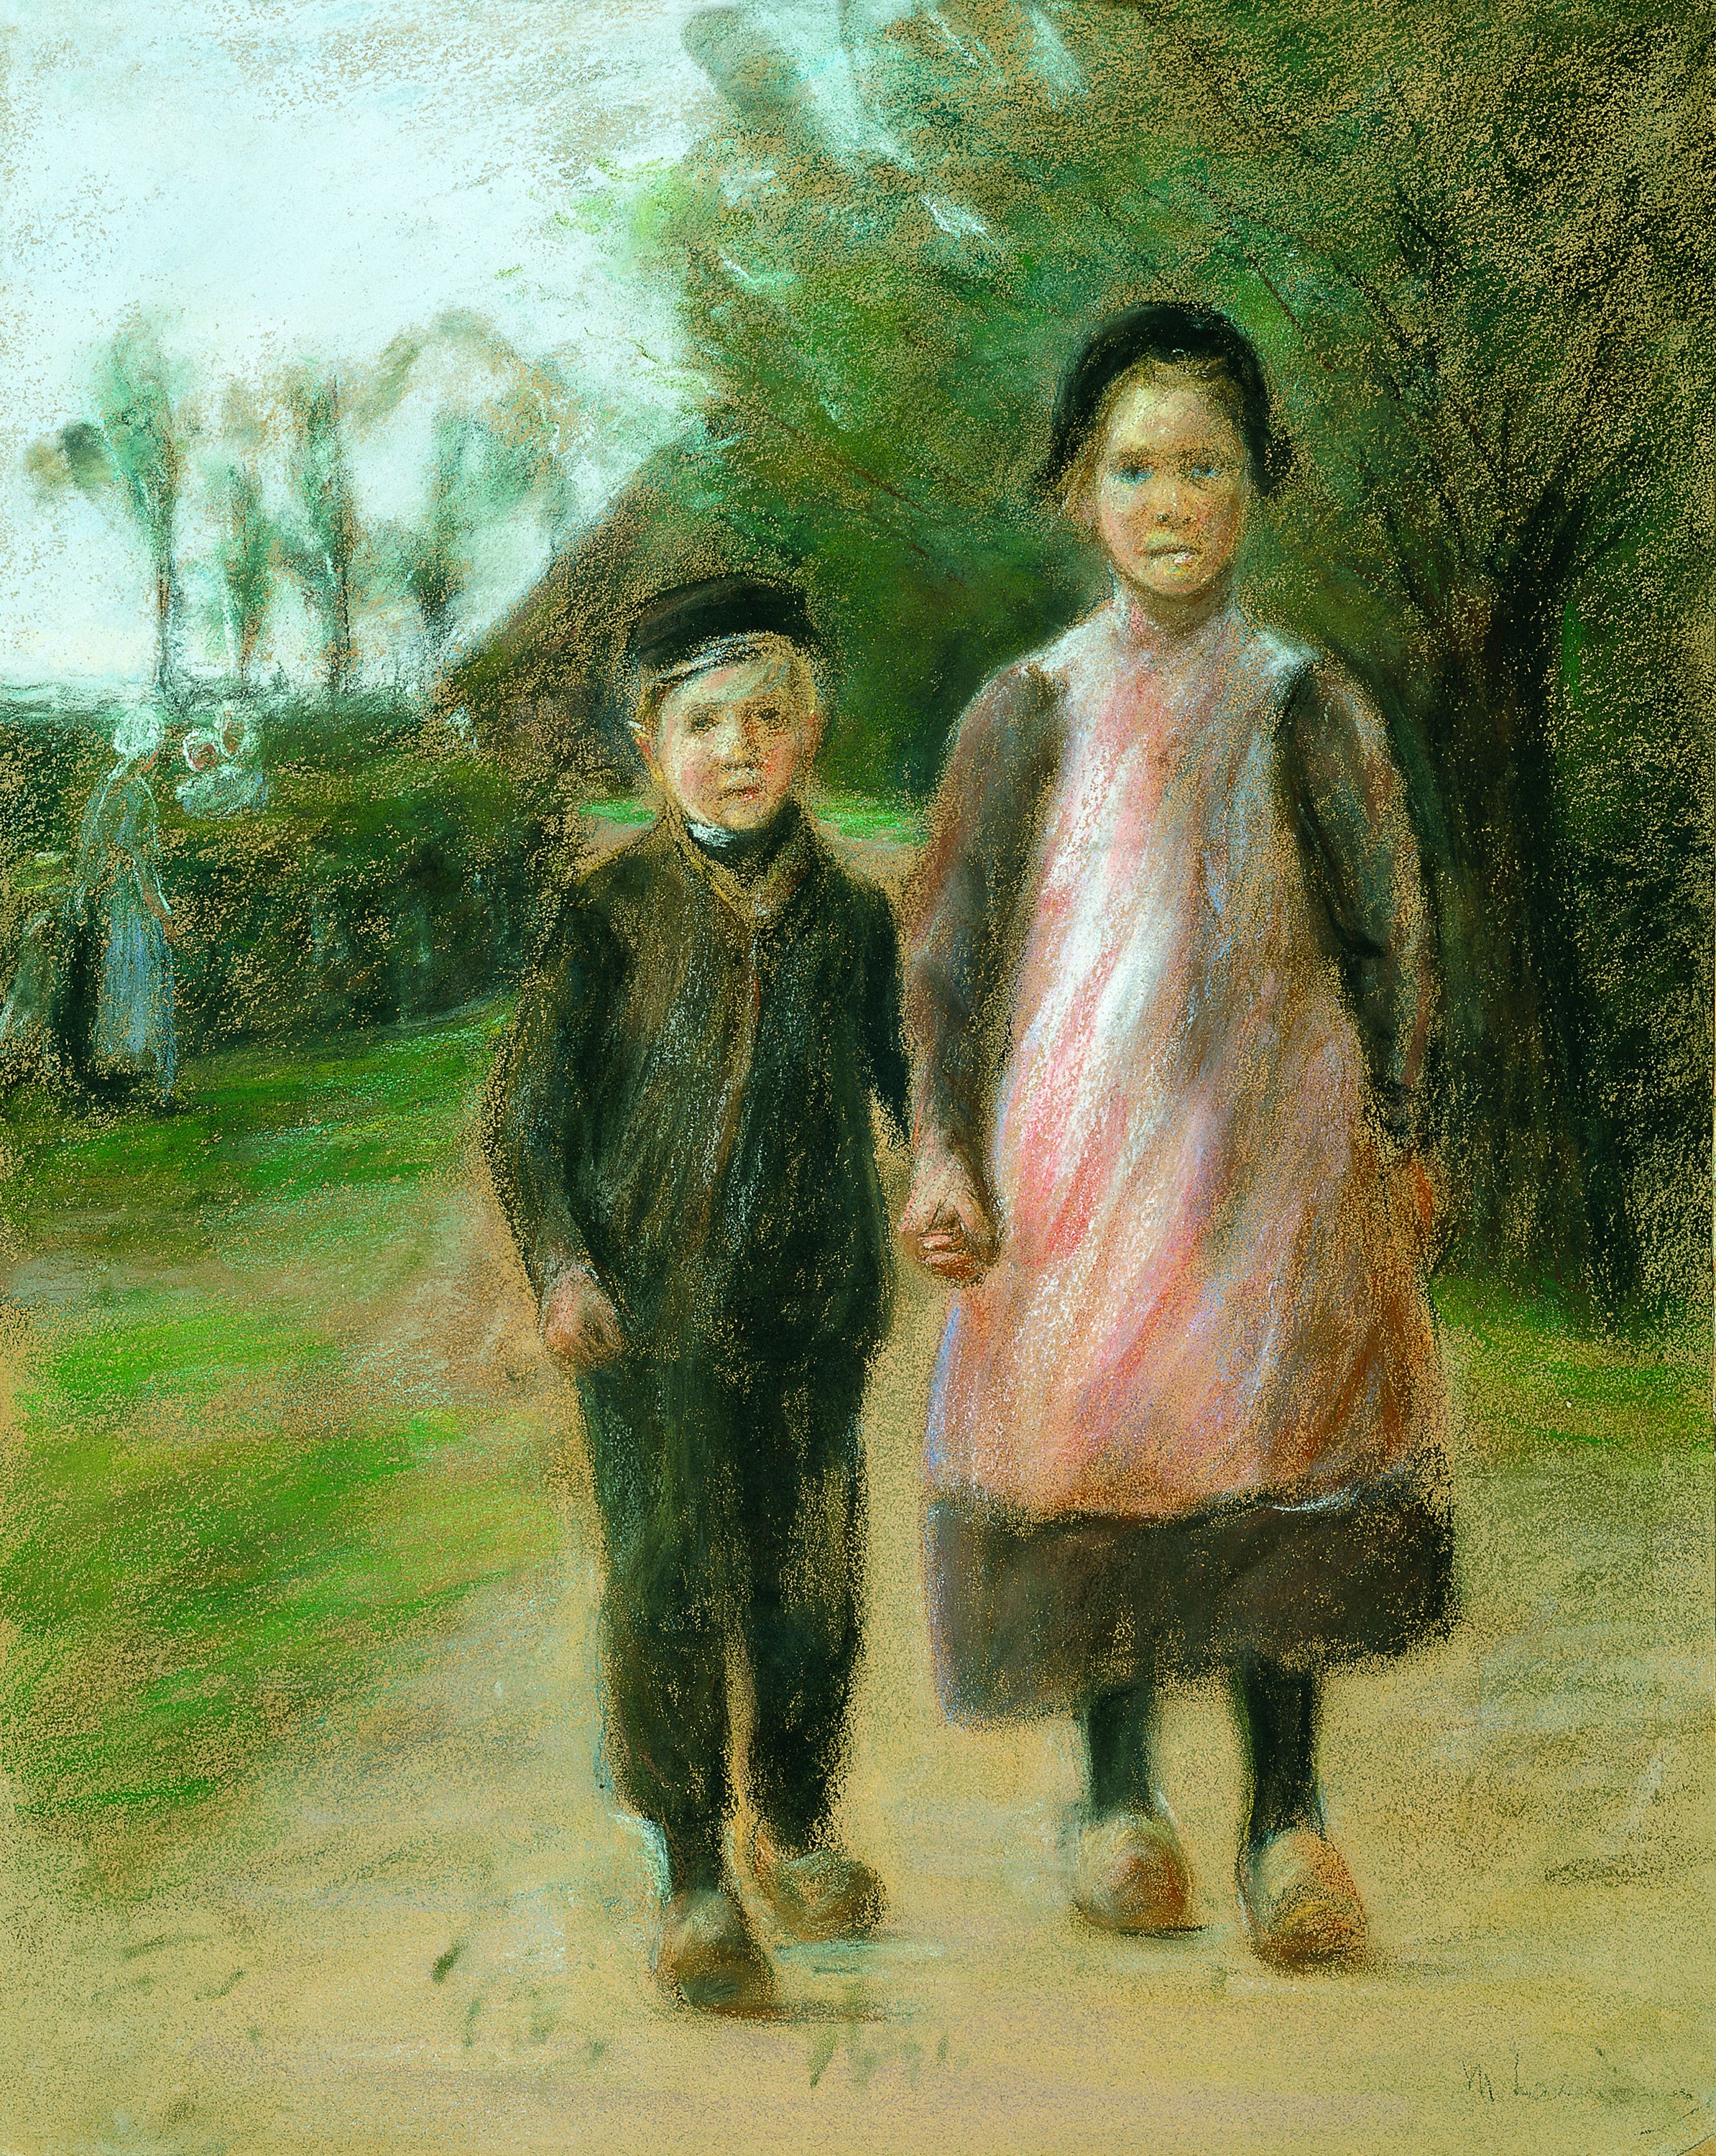 Boy and Girl on a Village Street. Niño y niña en una calle de pueblo, c. 1897